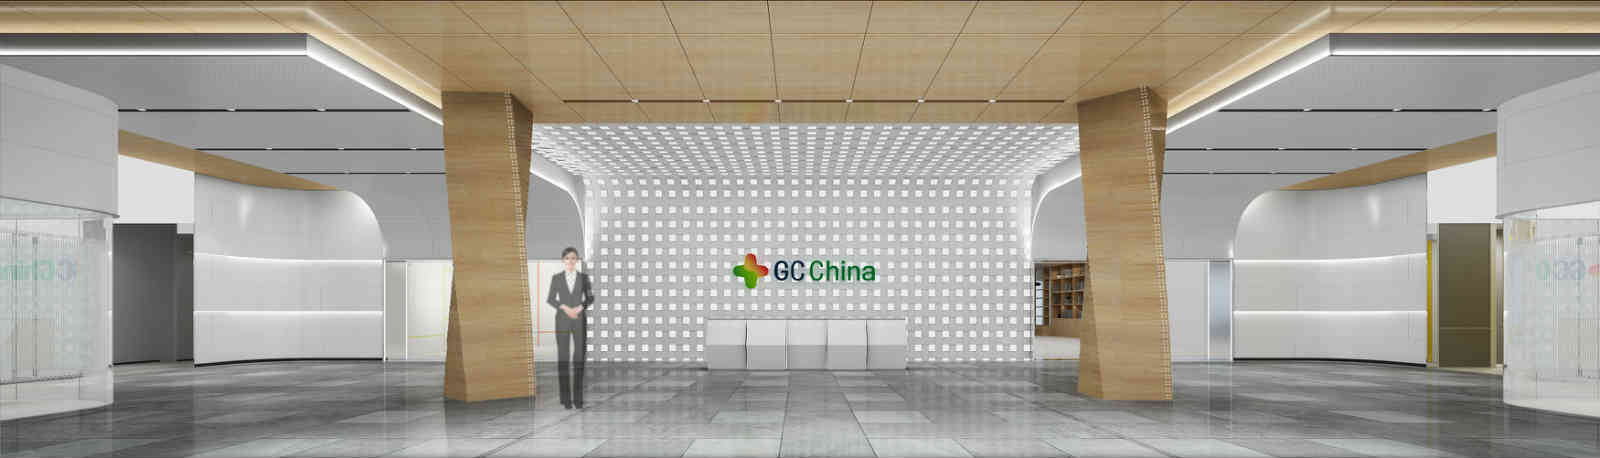 中标喜讯 || 祝贺我公司成功中标绿十字（中国）生物制品有限公司综合楼内部装饰工程